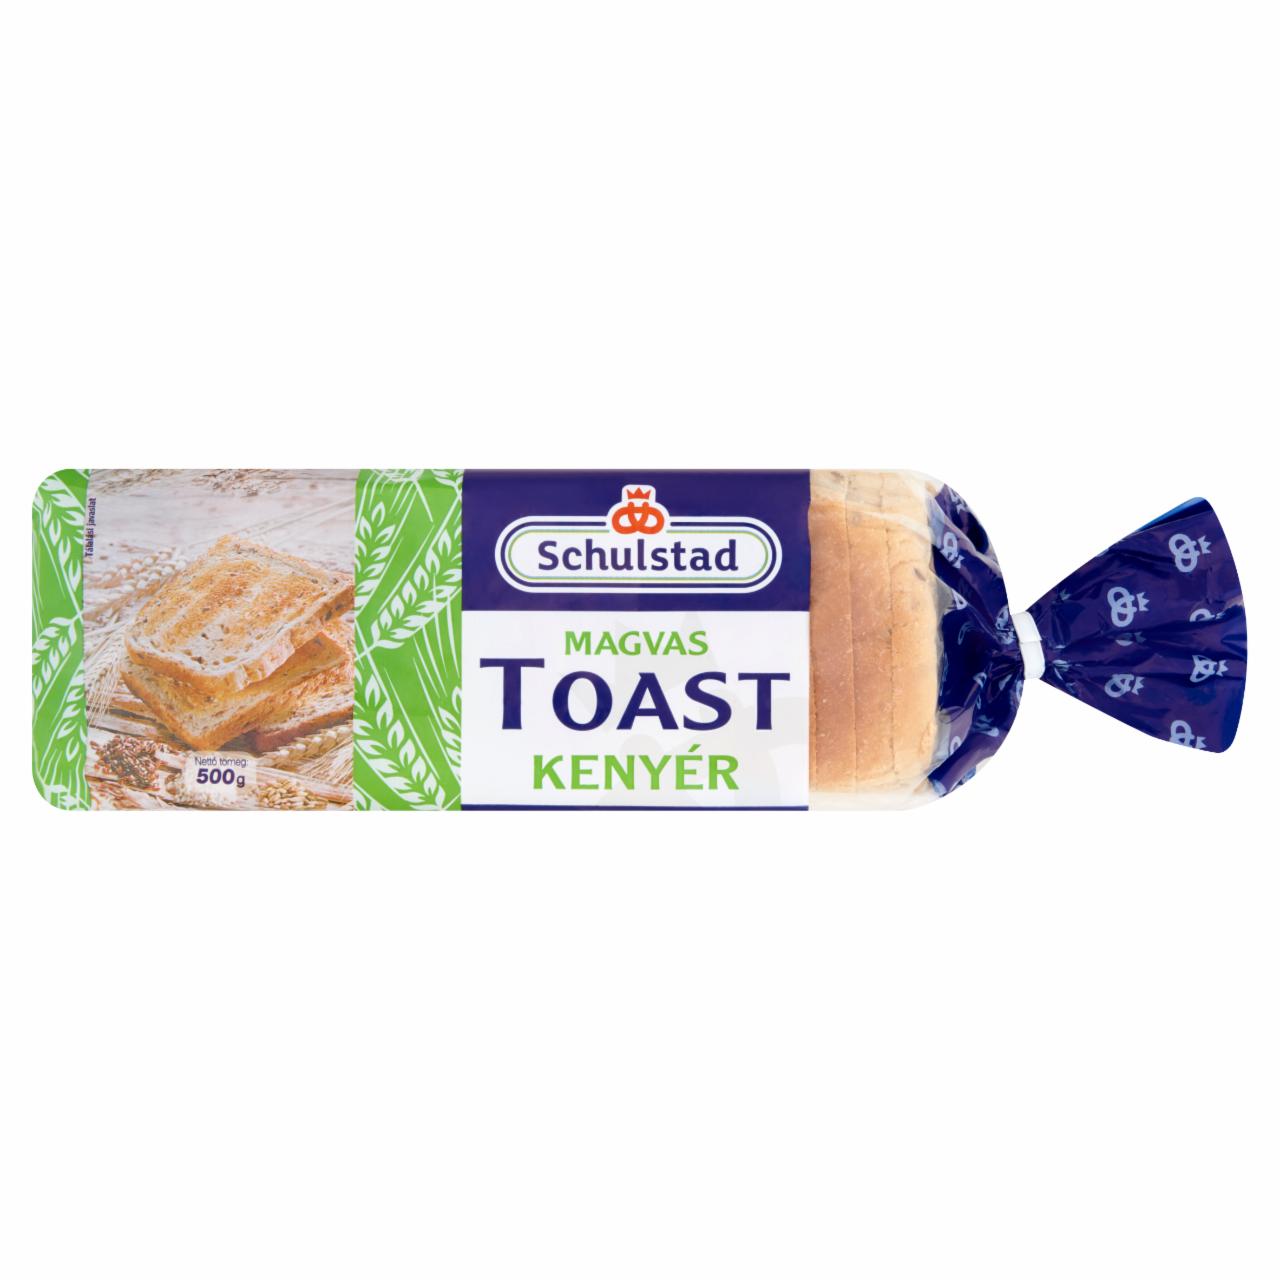 Képek - Schulstad magvas toast kenyér 500 g